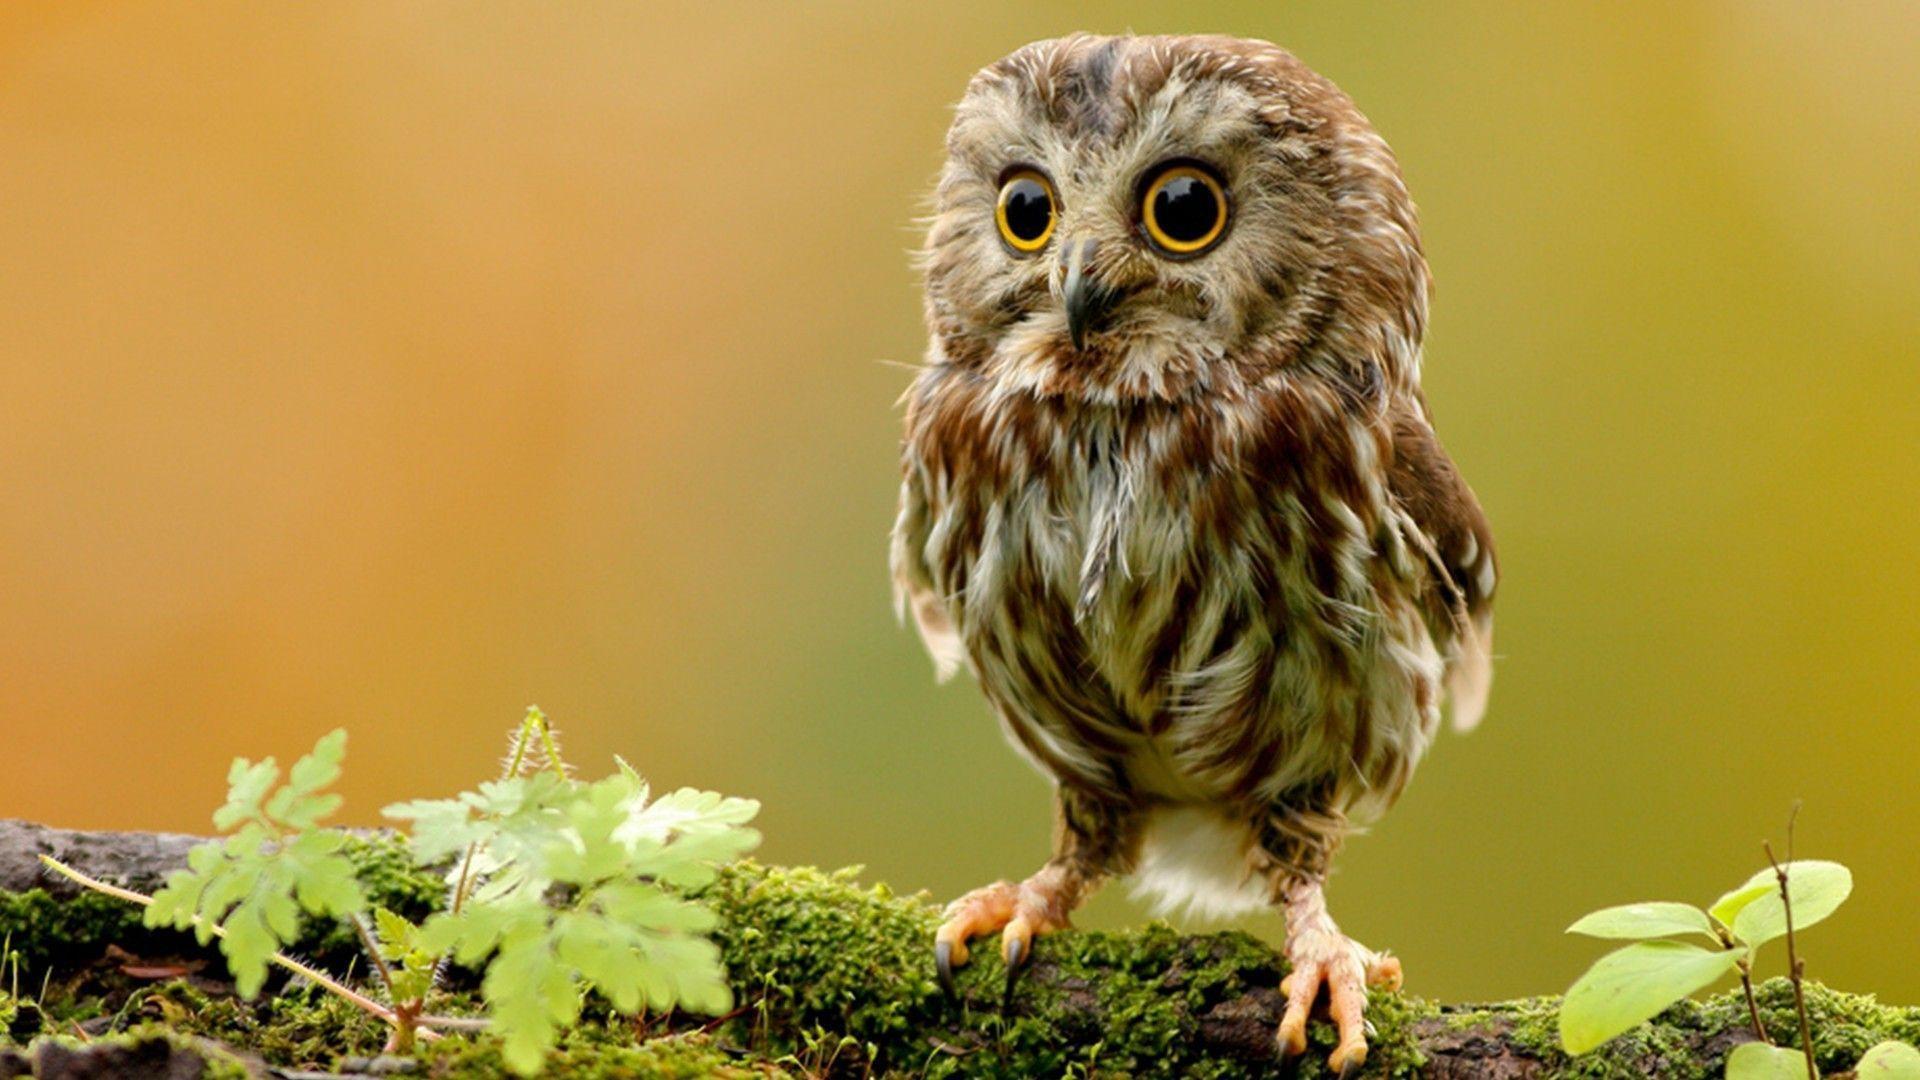 Cute Owl Wallpapers - Top Những Hình Ảnh Đẹp